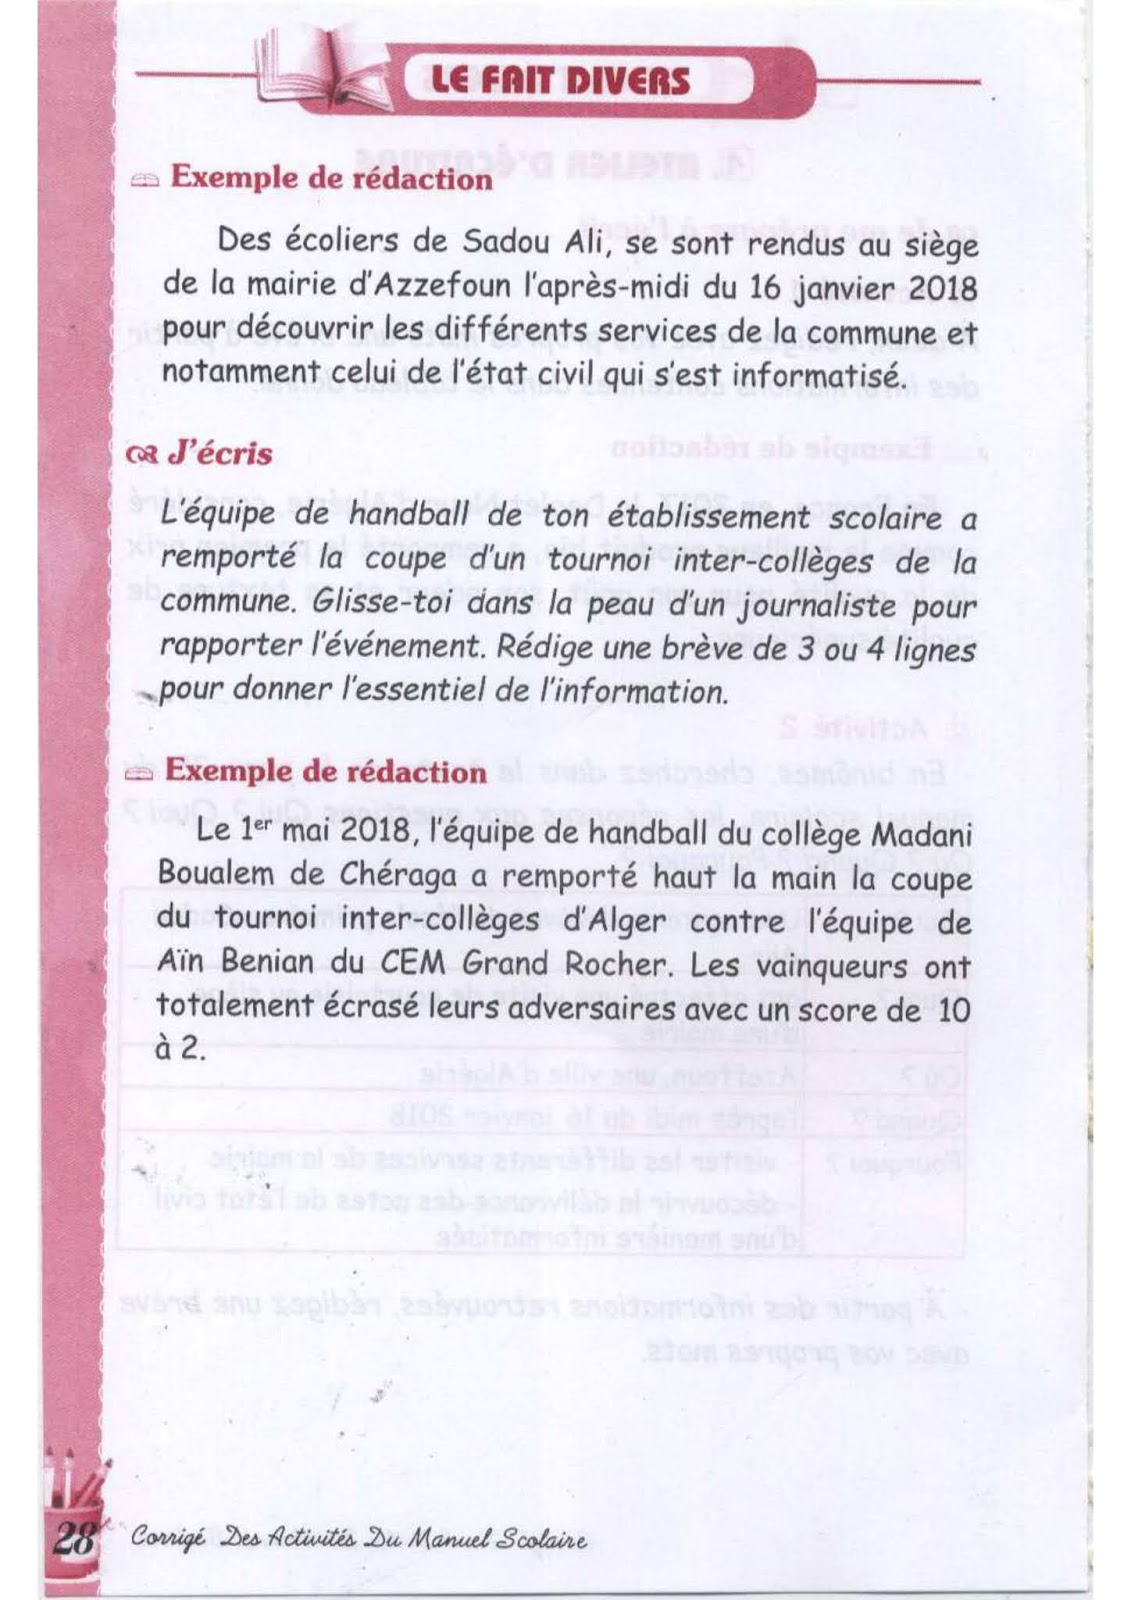 حل الصفحة 26 من كتاب الفرنسية للسنة الثالثة متوسط